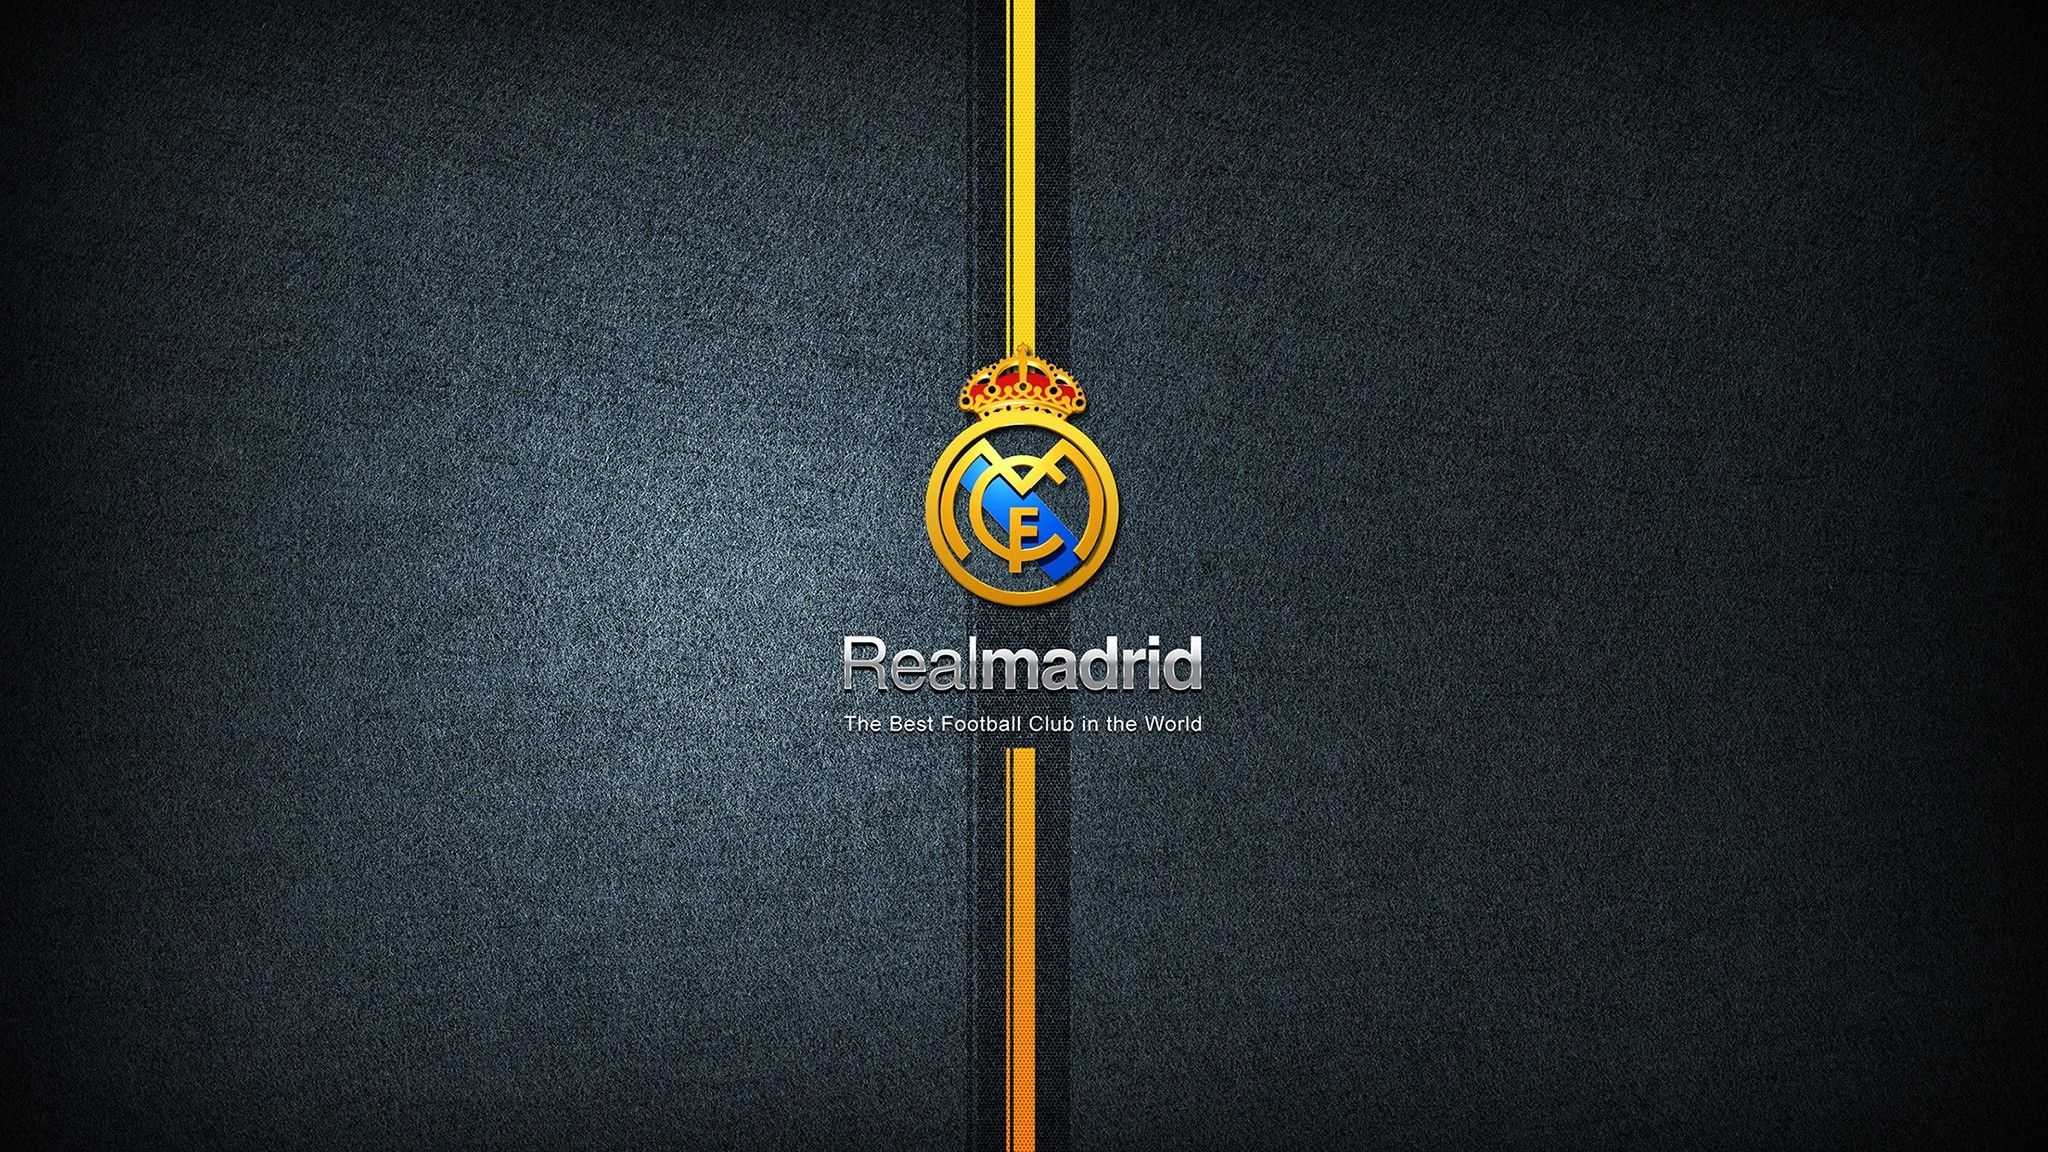 Más de 86 fondos de pantalla de Real Madrid